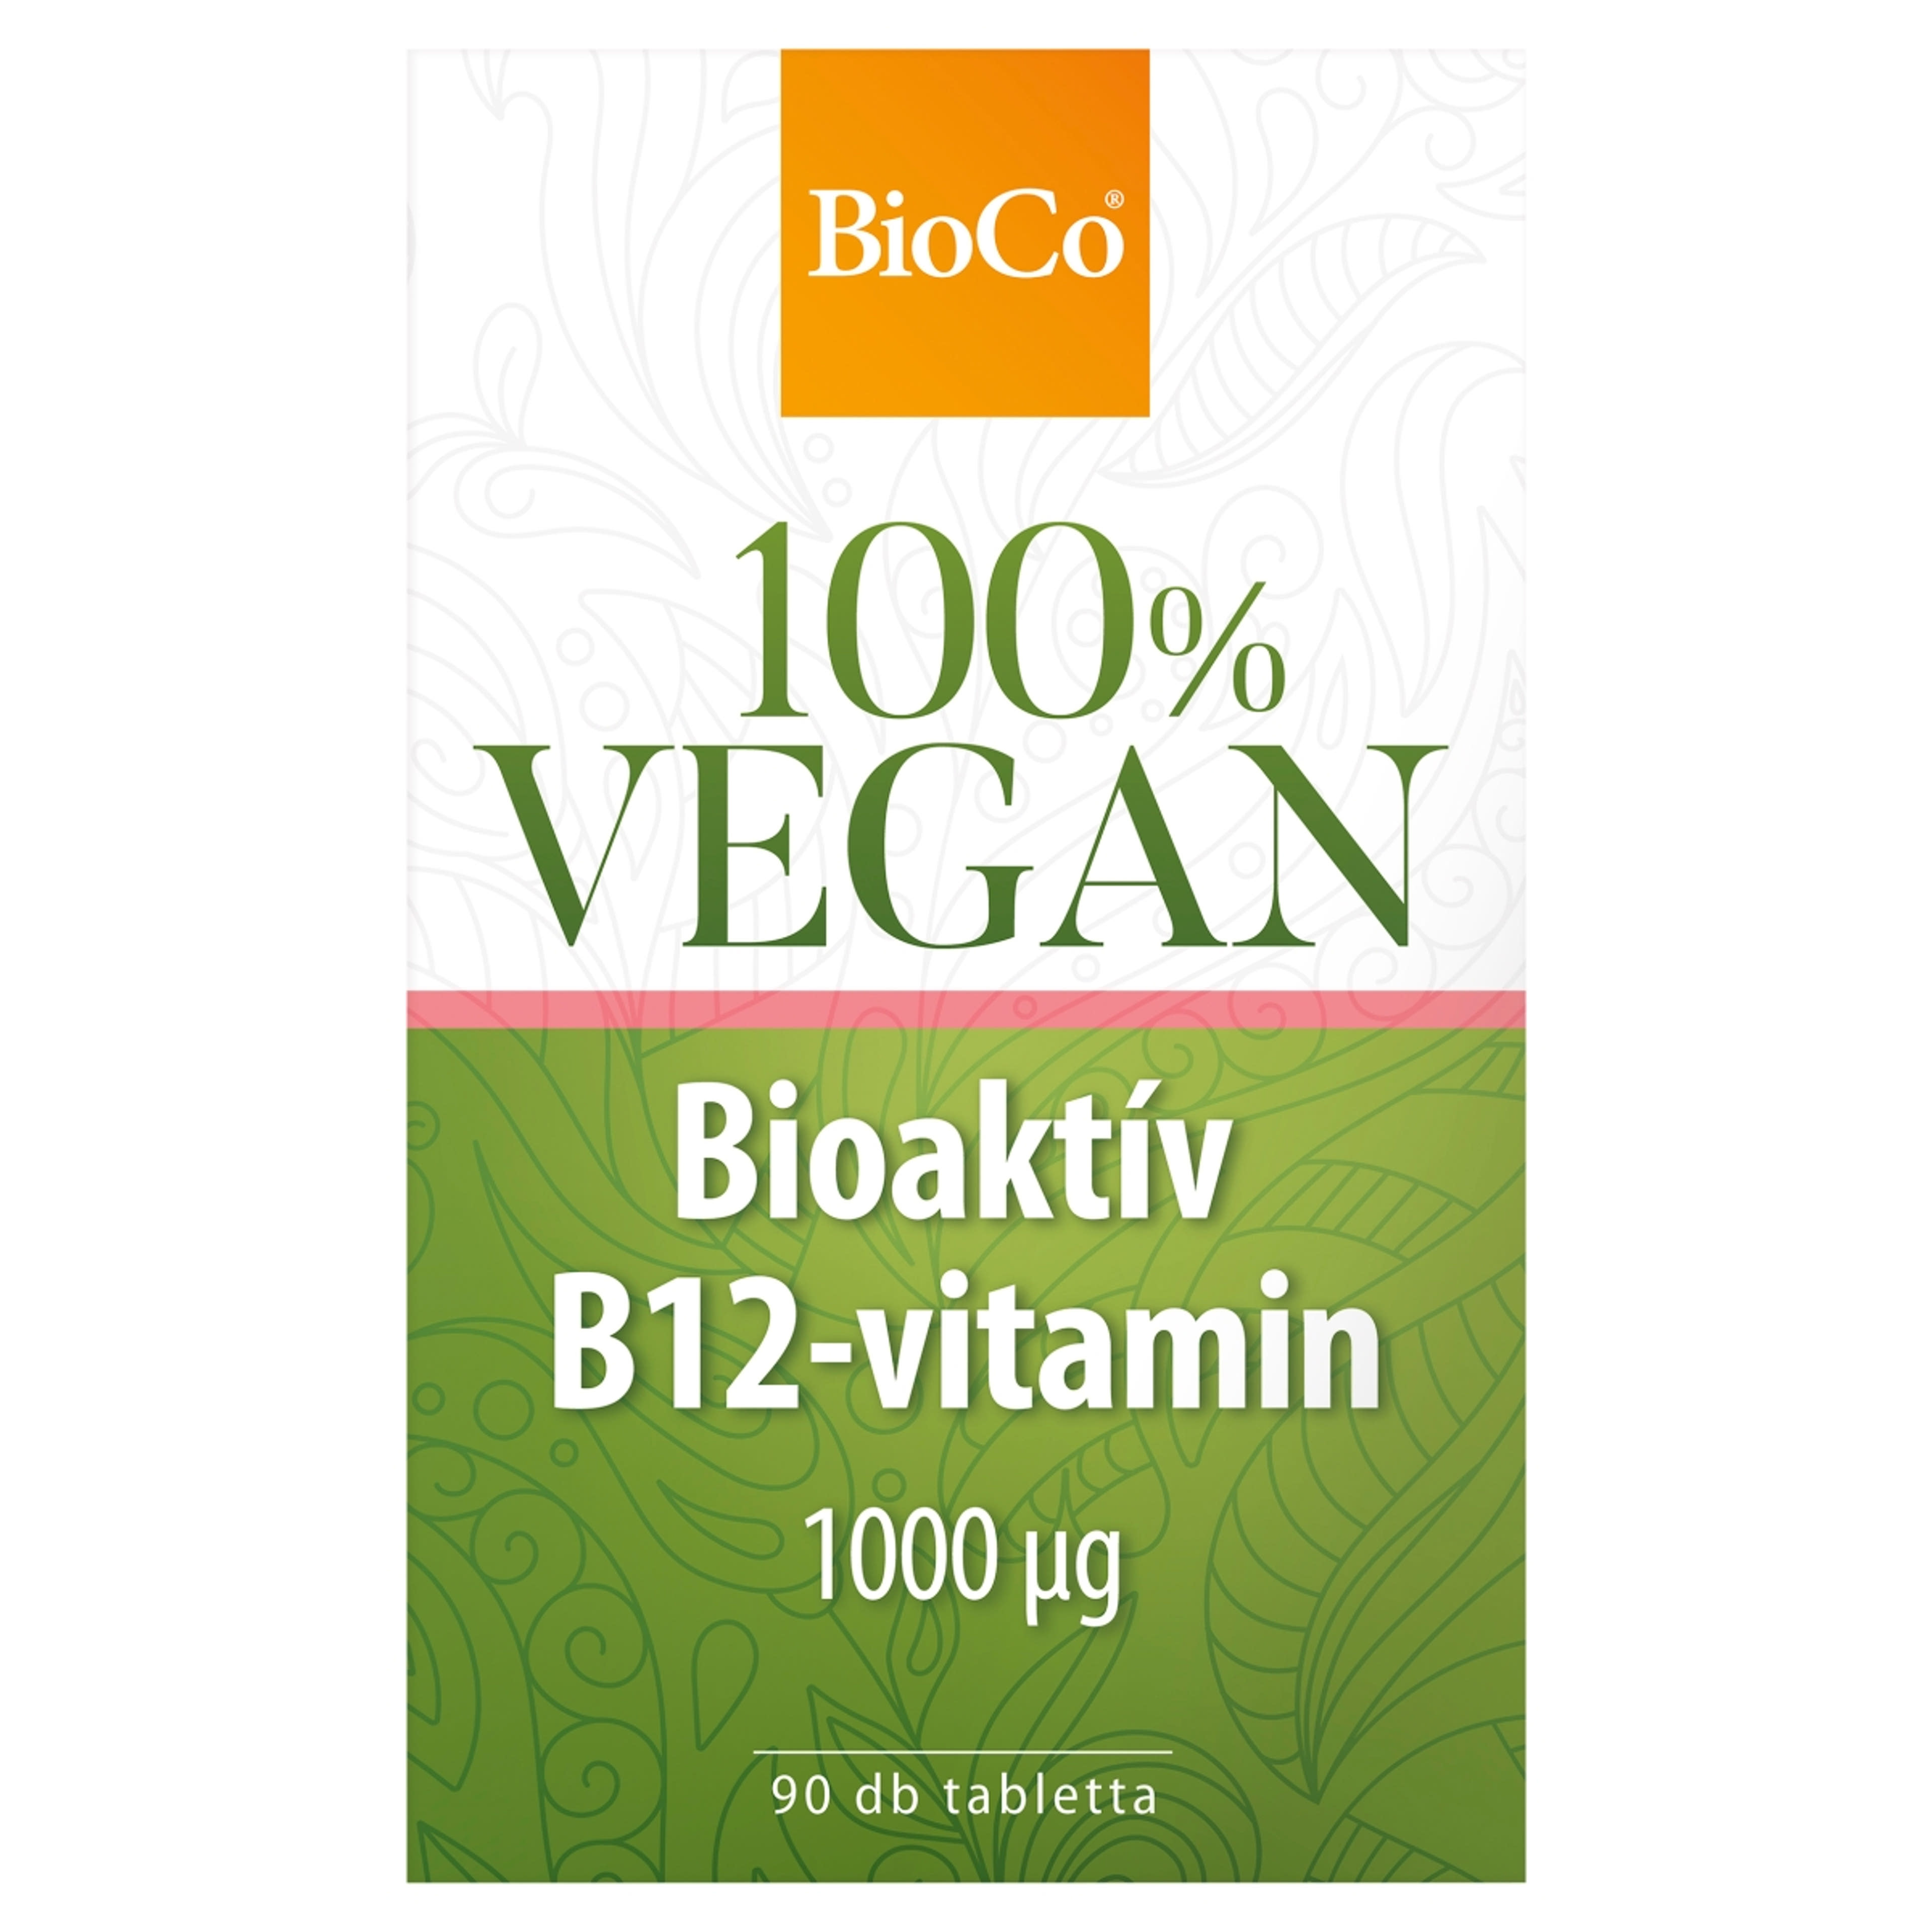 Bioco vegán bioaktív B12-vitamin tabletta - 90 db-1